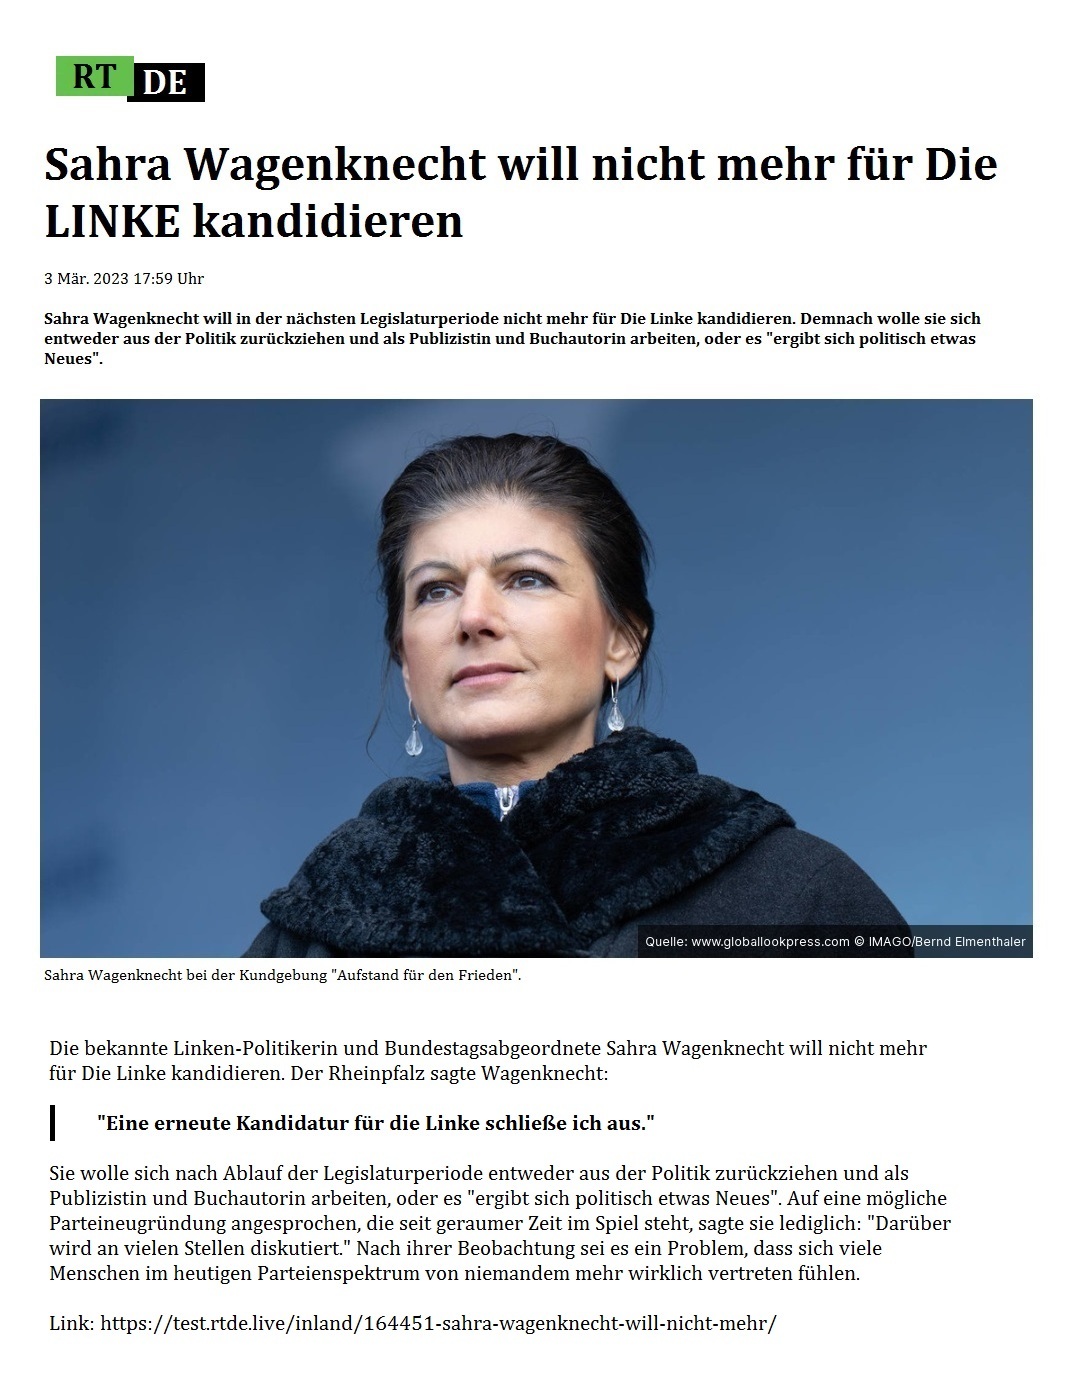 Sahra Wagenknecht will nicht mehr für Die LINKE kandidieren - 3 Mär. 2023 17:59 Uhr - Sahra Wagenknecht will in der nächsten Legislaturperiode nicht mehr für Die Linke kandidieren. Demnach wolle sie sich entweder aus der Politik zurückziehen und als Publizistin und Buchautorin arbeiten, oder es 'ergibt sich politisch etwas Neues'. - 3 Mär. 2023 17:59 Uhr - RT DE - Link: https://test.rtde.live/inland/164451-sahra-wagenknecht-will-nicht-mehr/